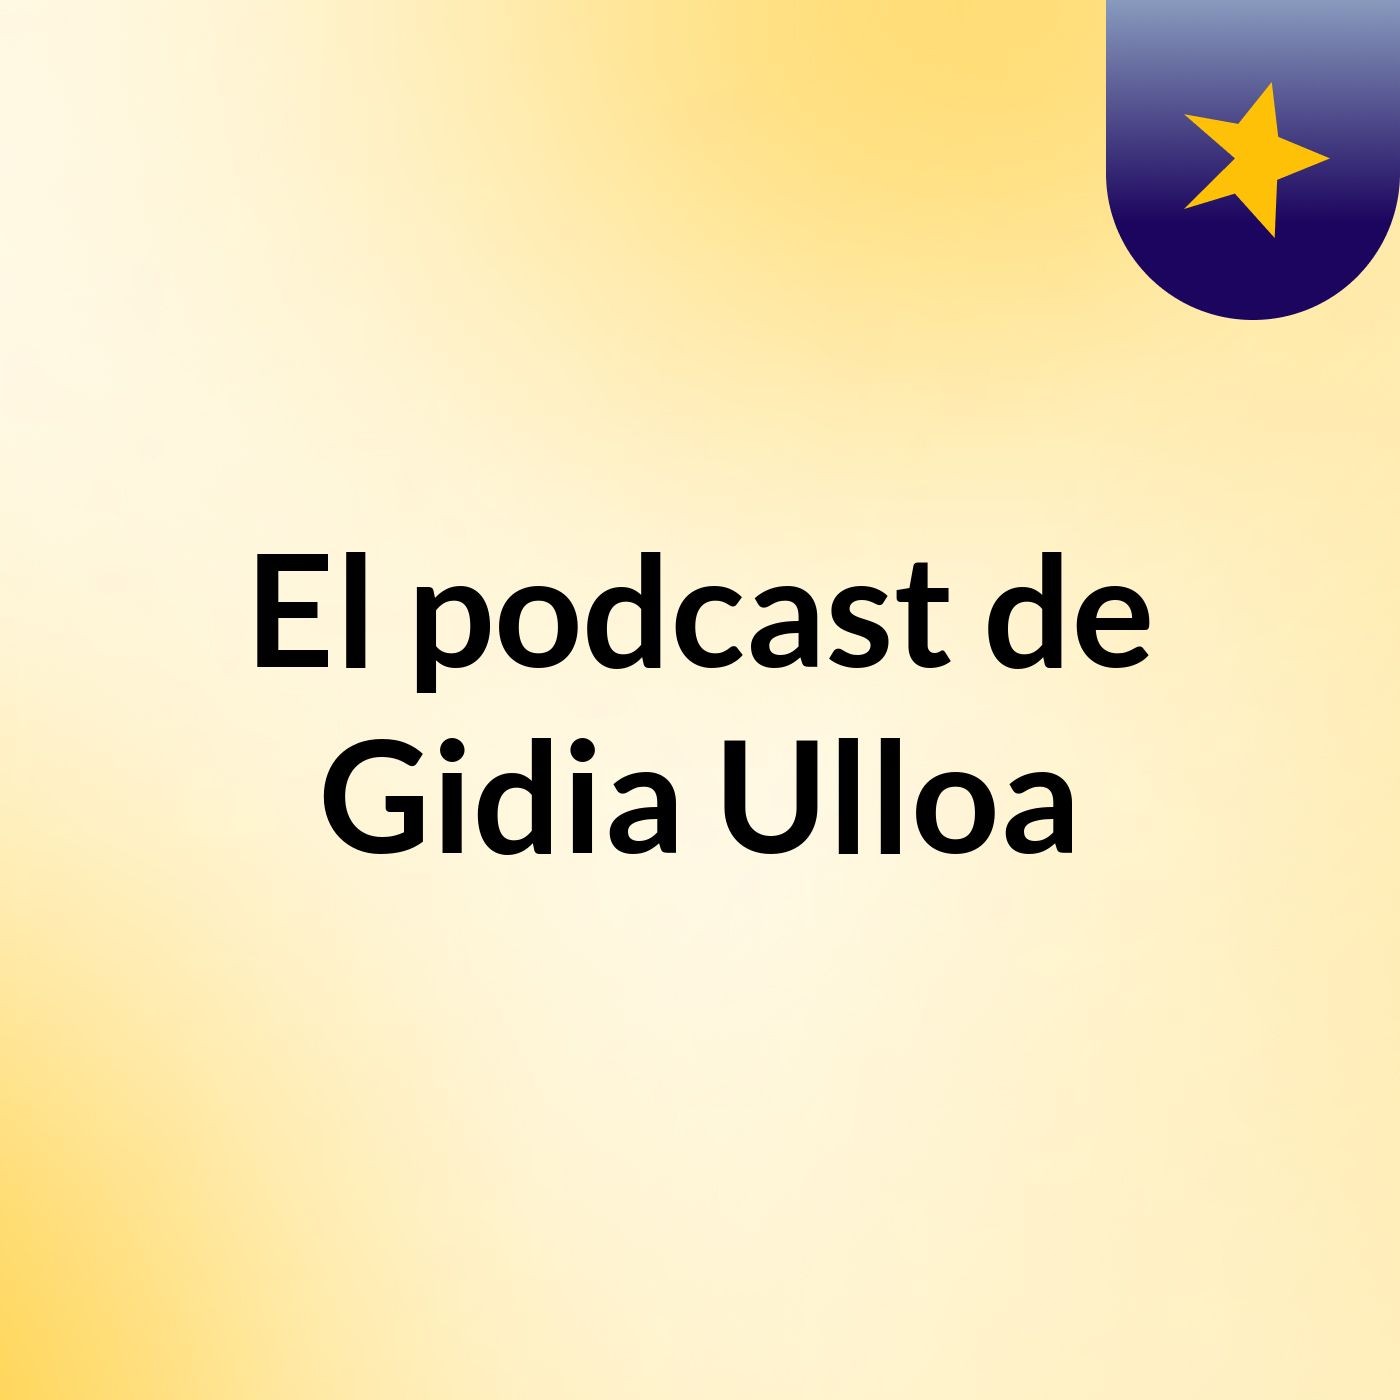 El podcast de Gidia Ulloa